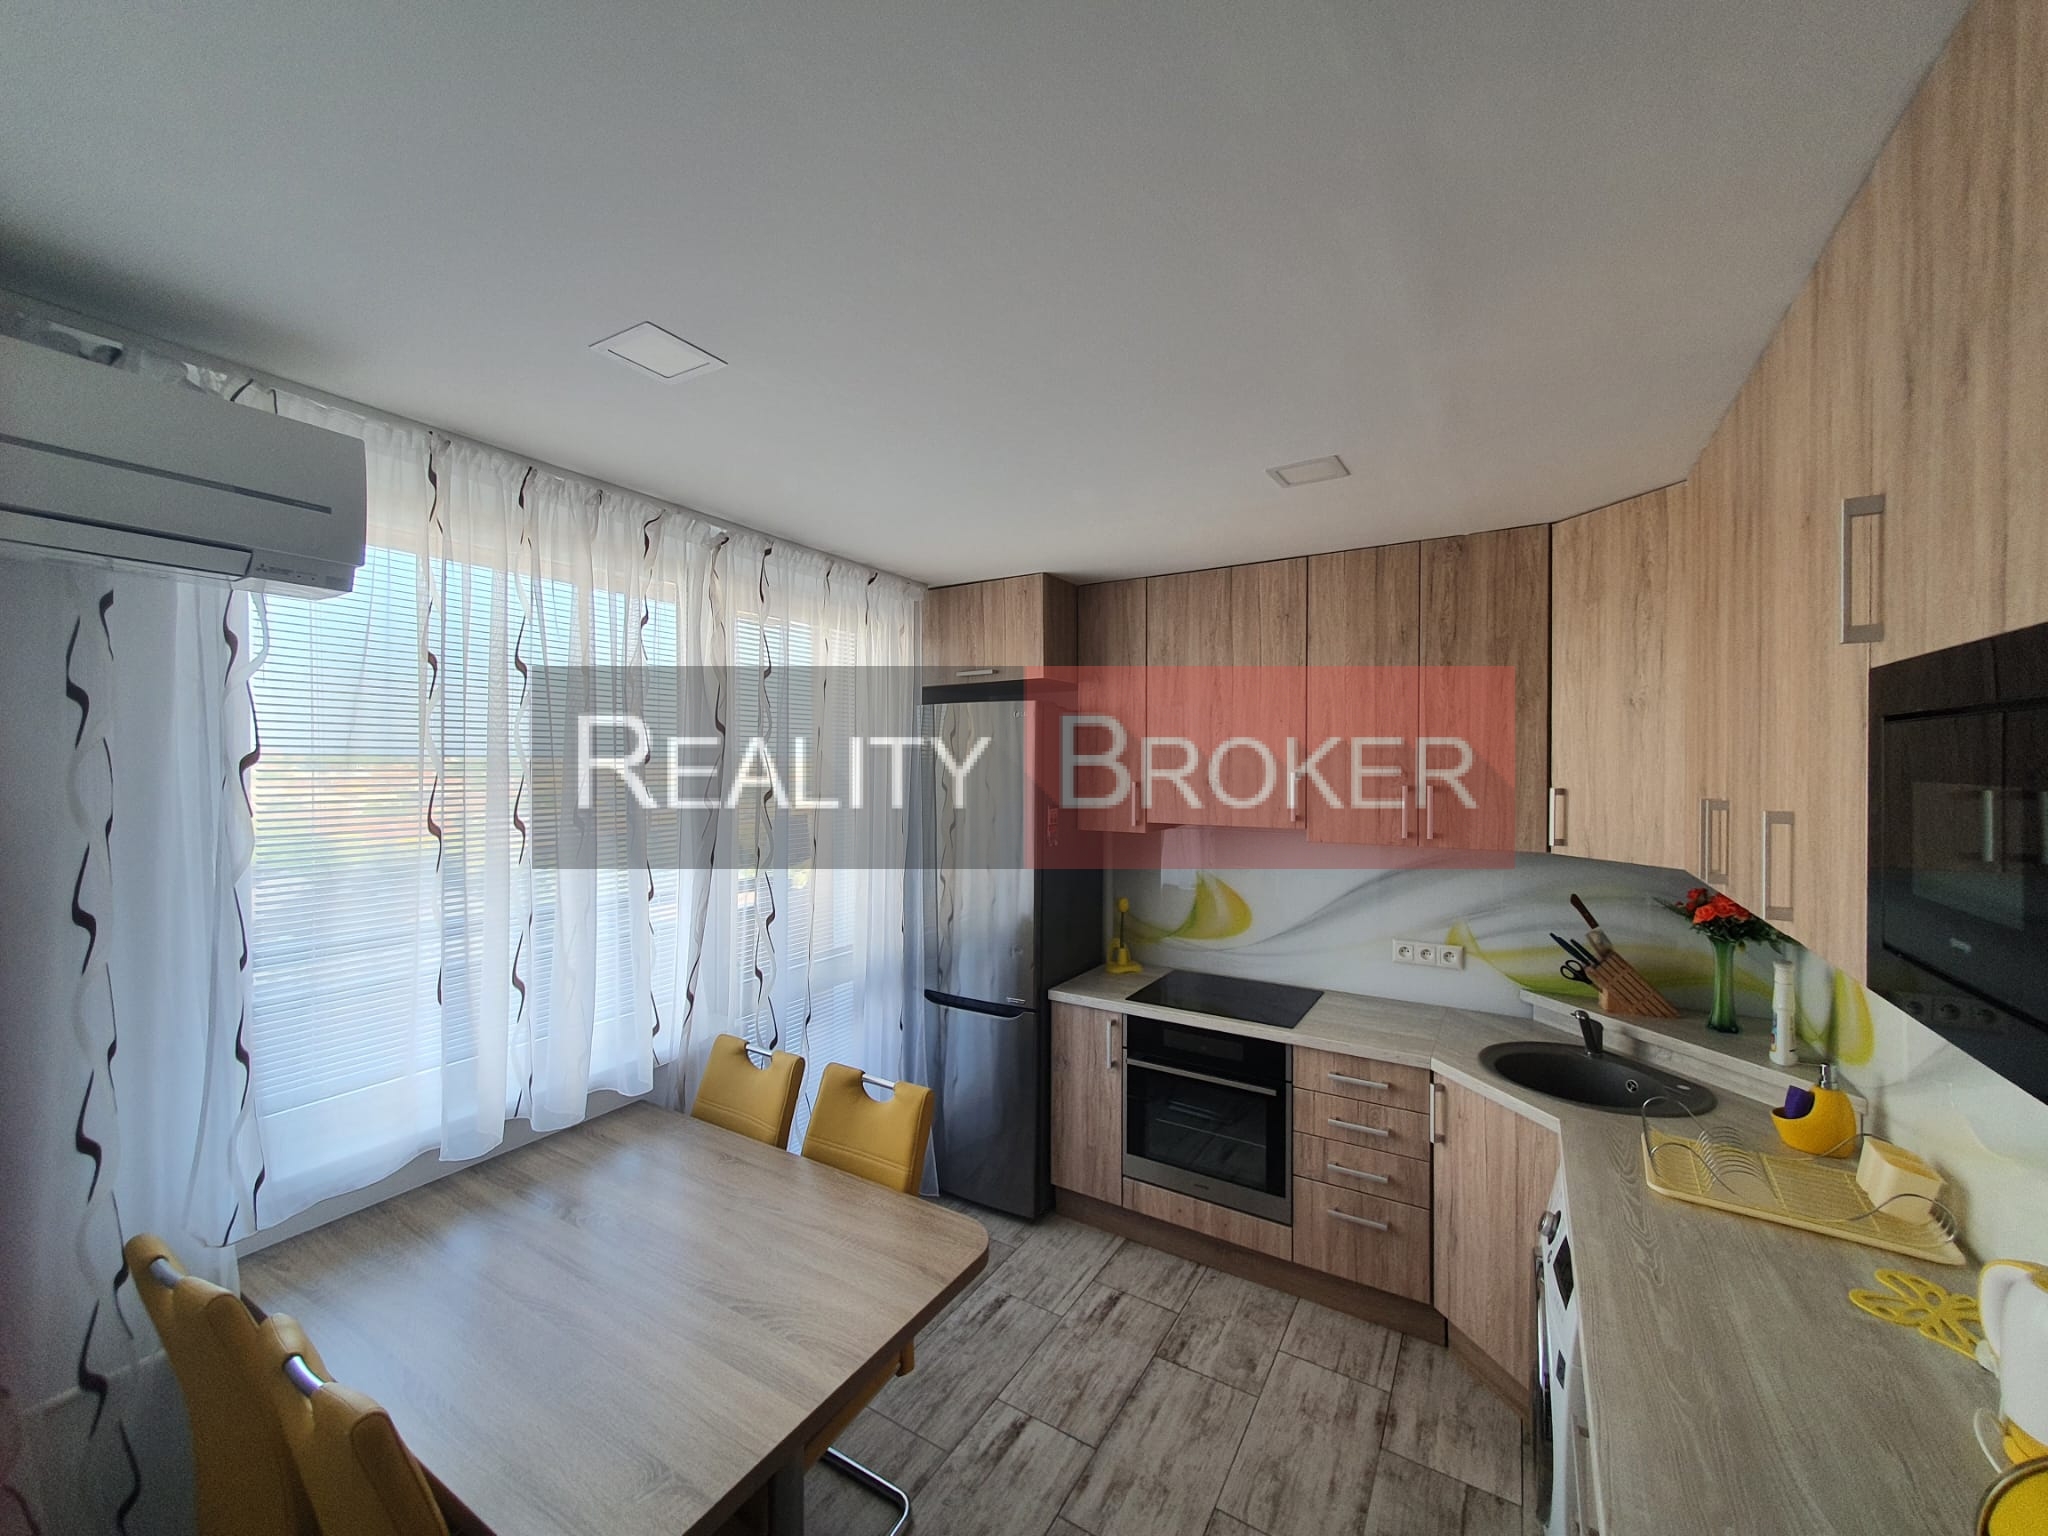 REZERVOVANE – REALITY BROKER ponúka na predaj pekný 3 izb. byt po kompletnej rekonštrukcii v centre mesta